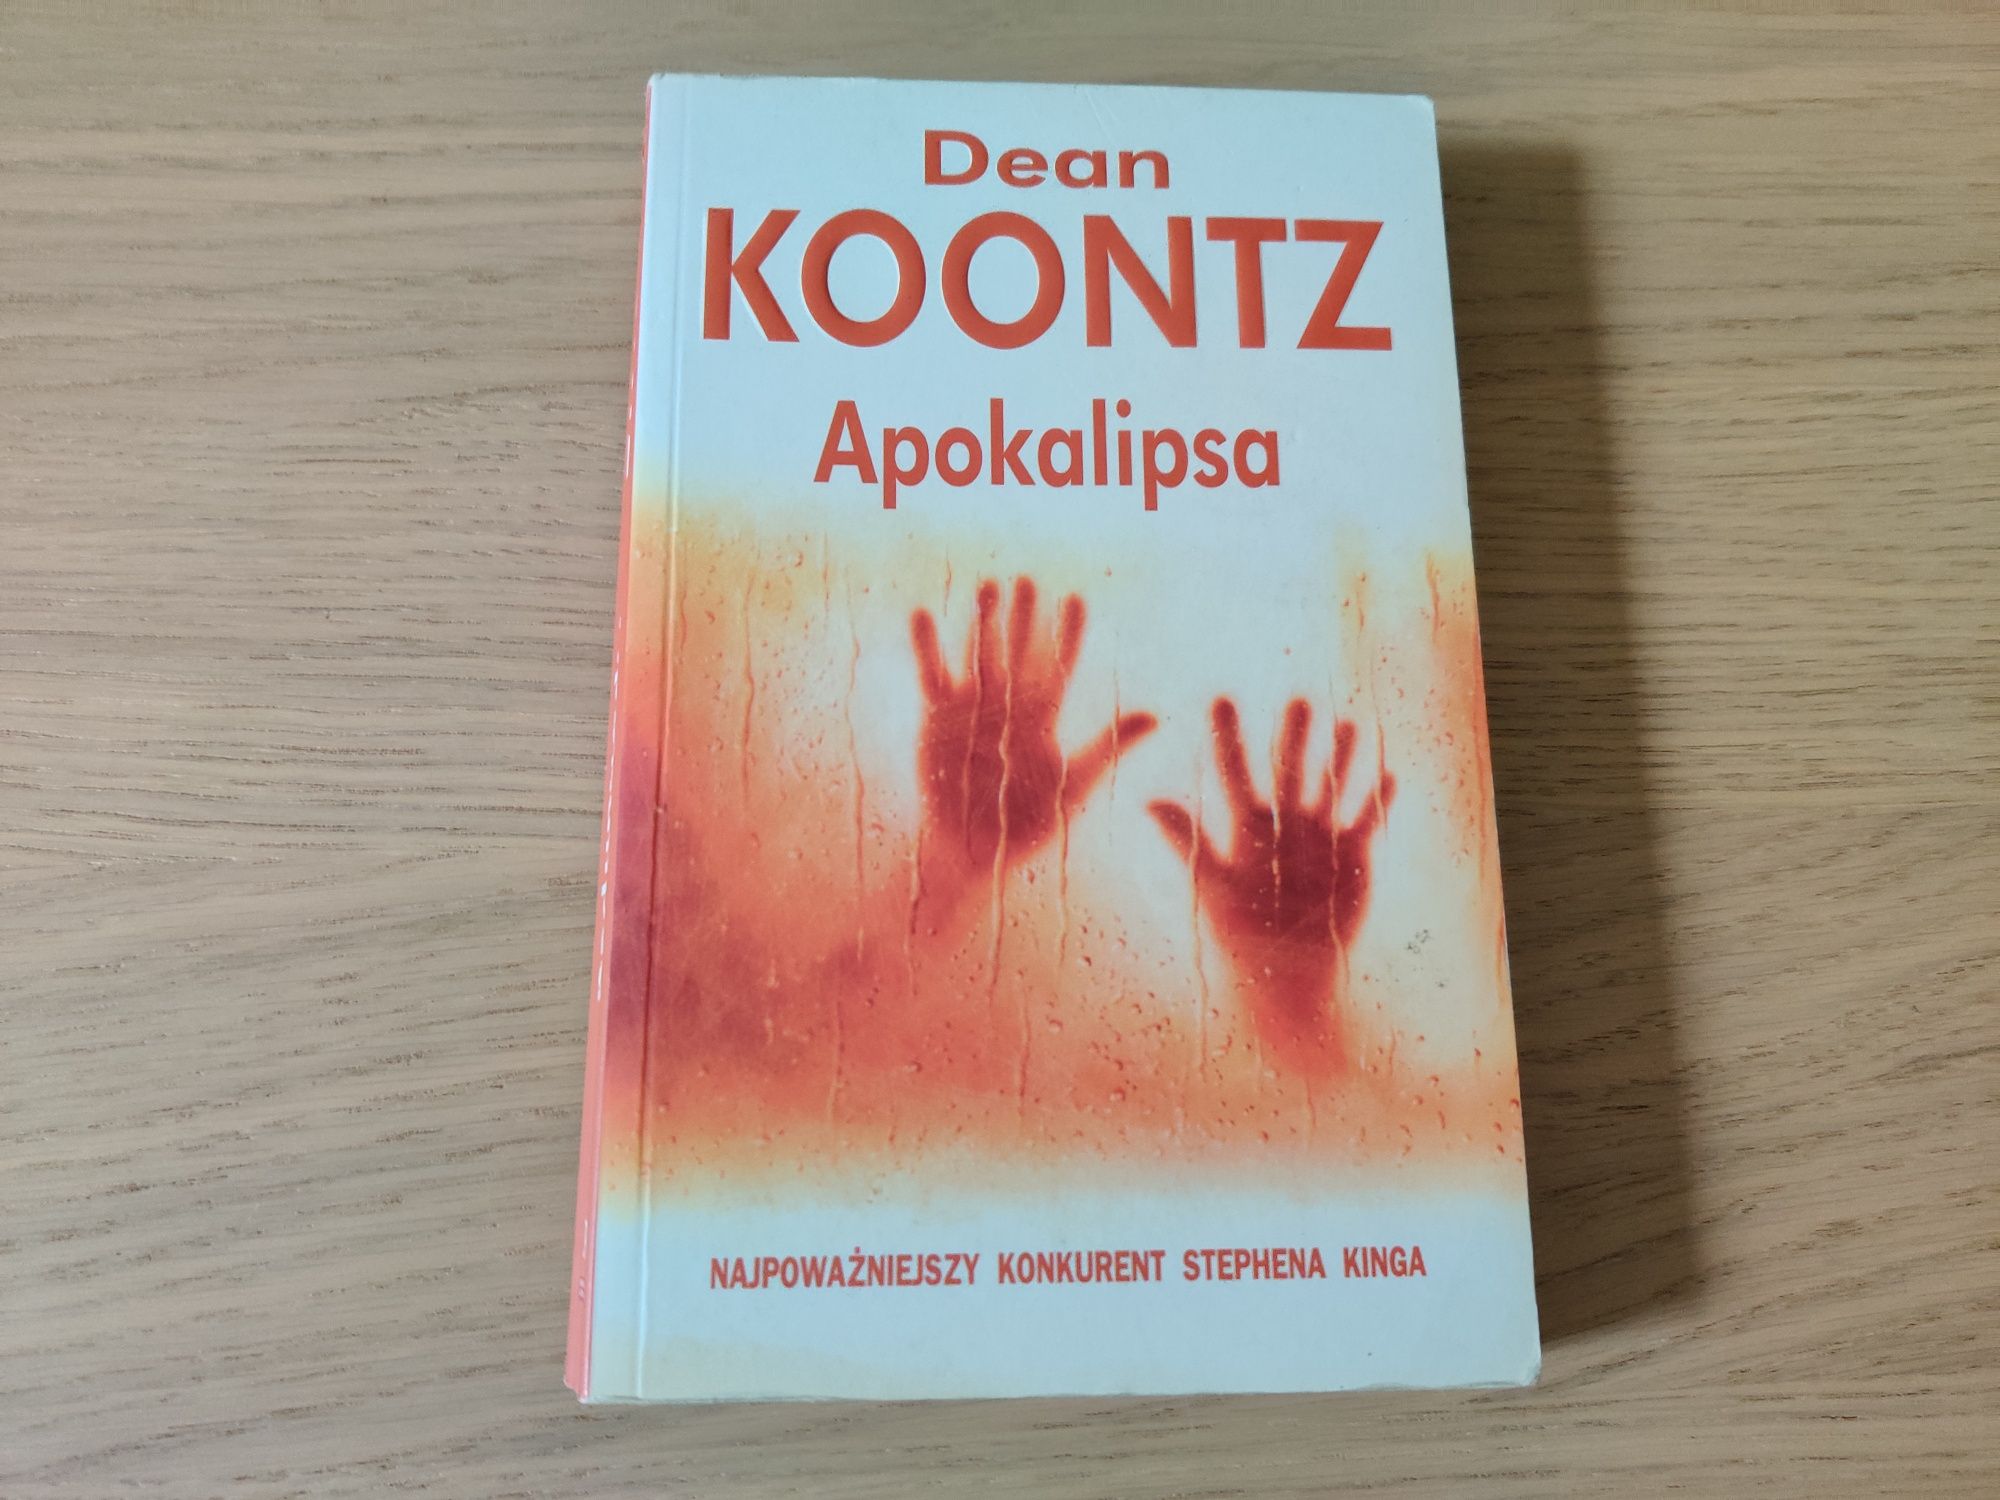 Dean Koontz, Apokalipsa